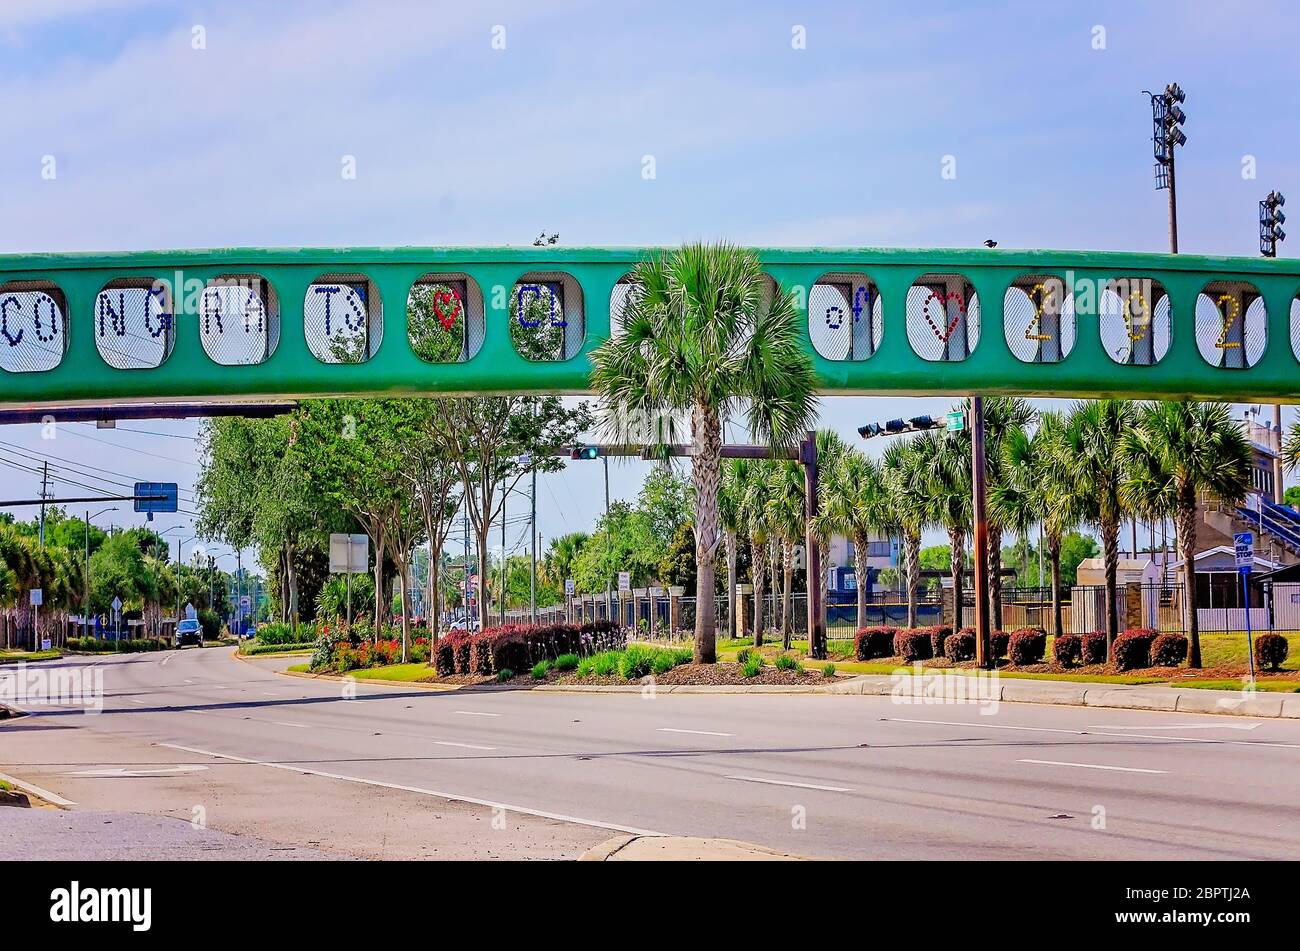 El paso elevado de la Escuela Secundaria Gulf Breeze a través de la autopista 98 está decorado con un cartel de la "clase de Congrats de 2020", el 16 de mayo de 2020, en Gulf Breeze, Florida. Foto de stock